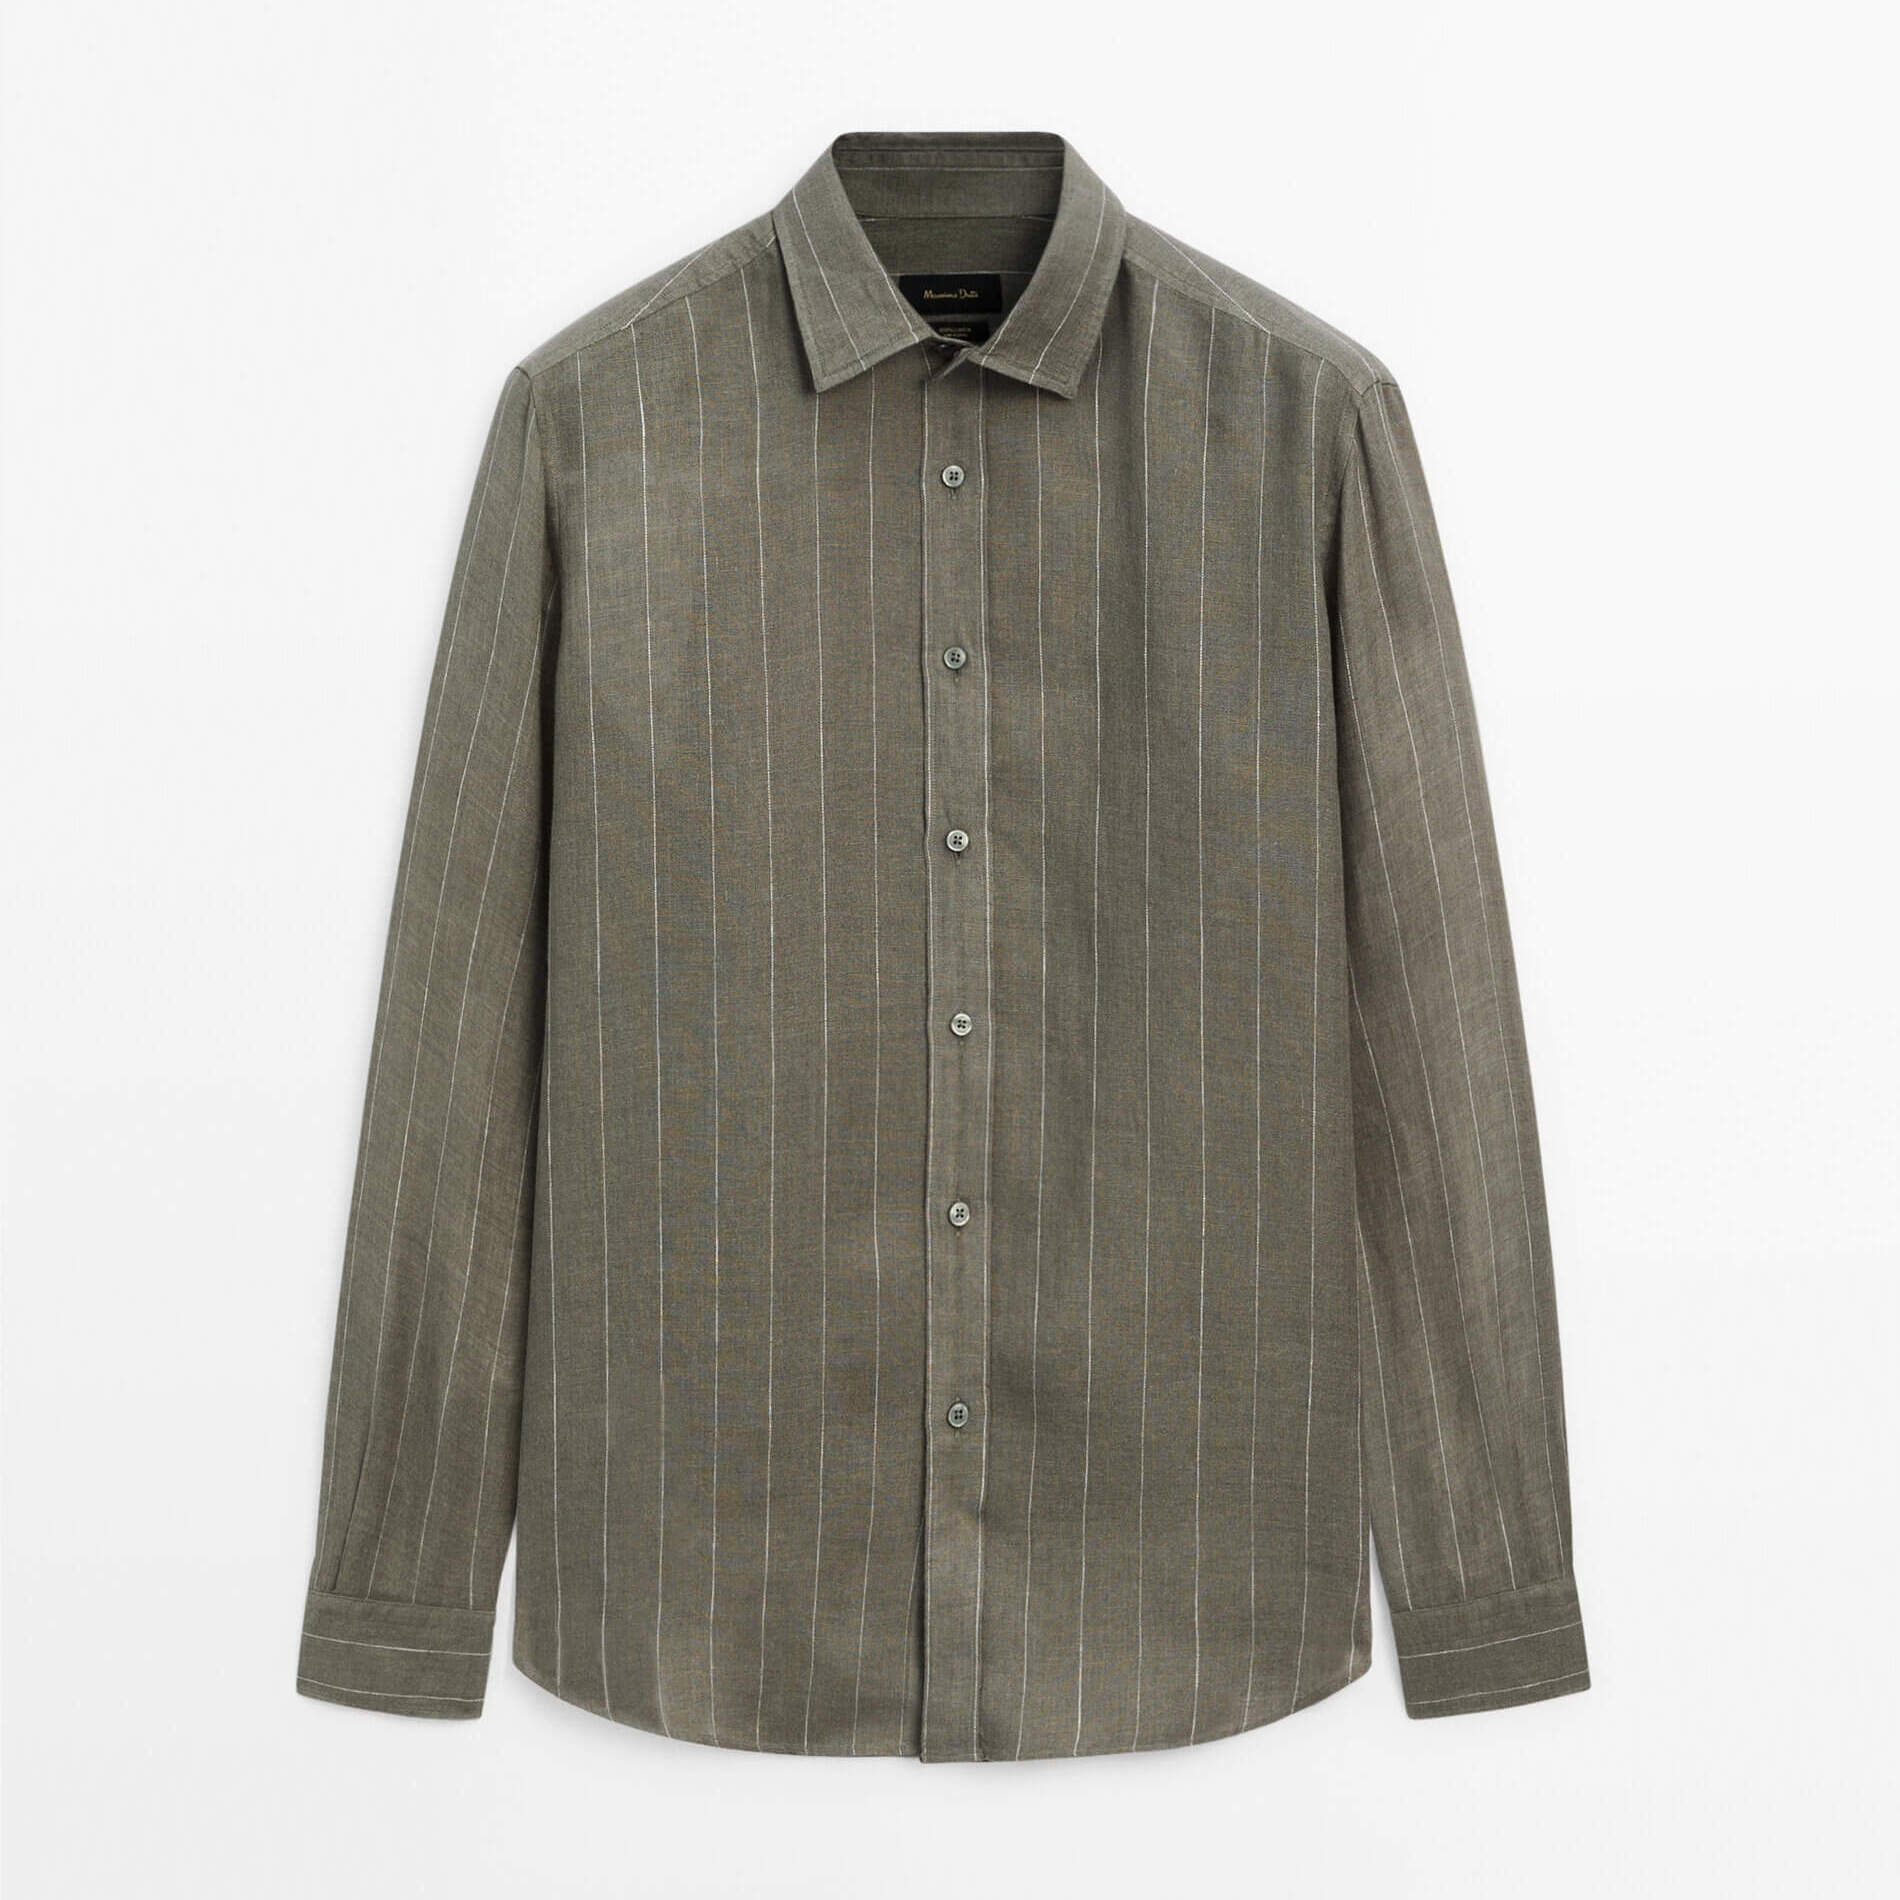 Рубашка Massimo Dutti 100% Linen Striped, зеленый рубашка uniqlo 100% linen striped белый синий